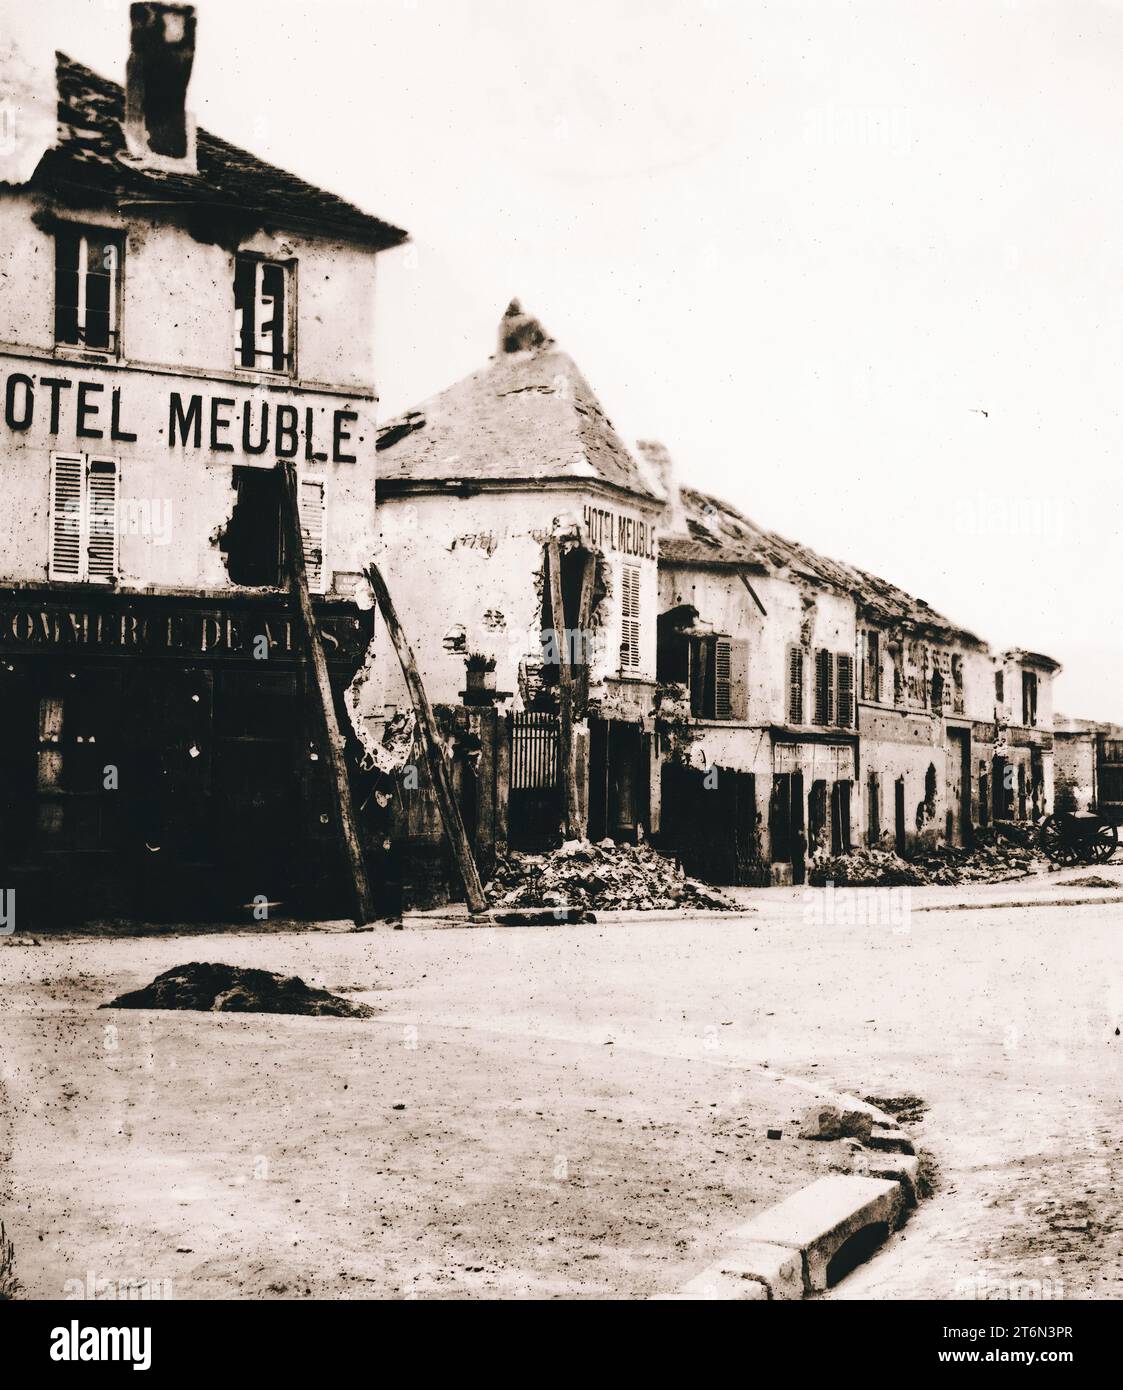 Commune de Paris. Point du jour - route de Versailles. Le siège et la commune de Paris (1870-1871) Banque D'Images